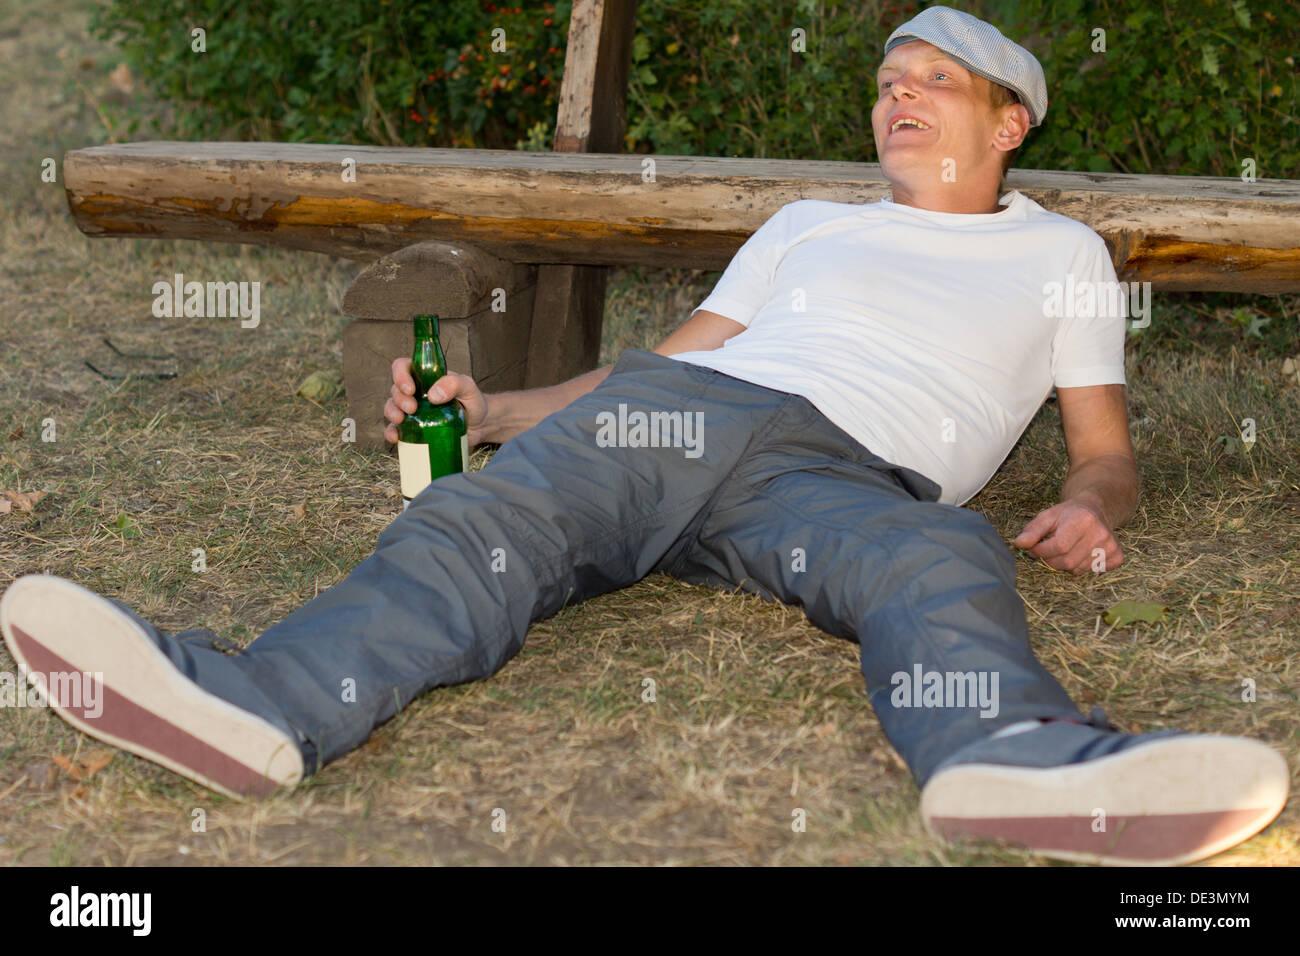 Betrunkener Mann erleben Euphorie durch übermäßigen Alkoholkonsum verursacht liegend im Park stützte sich auf eine Bank im park Stockfoto